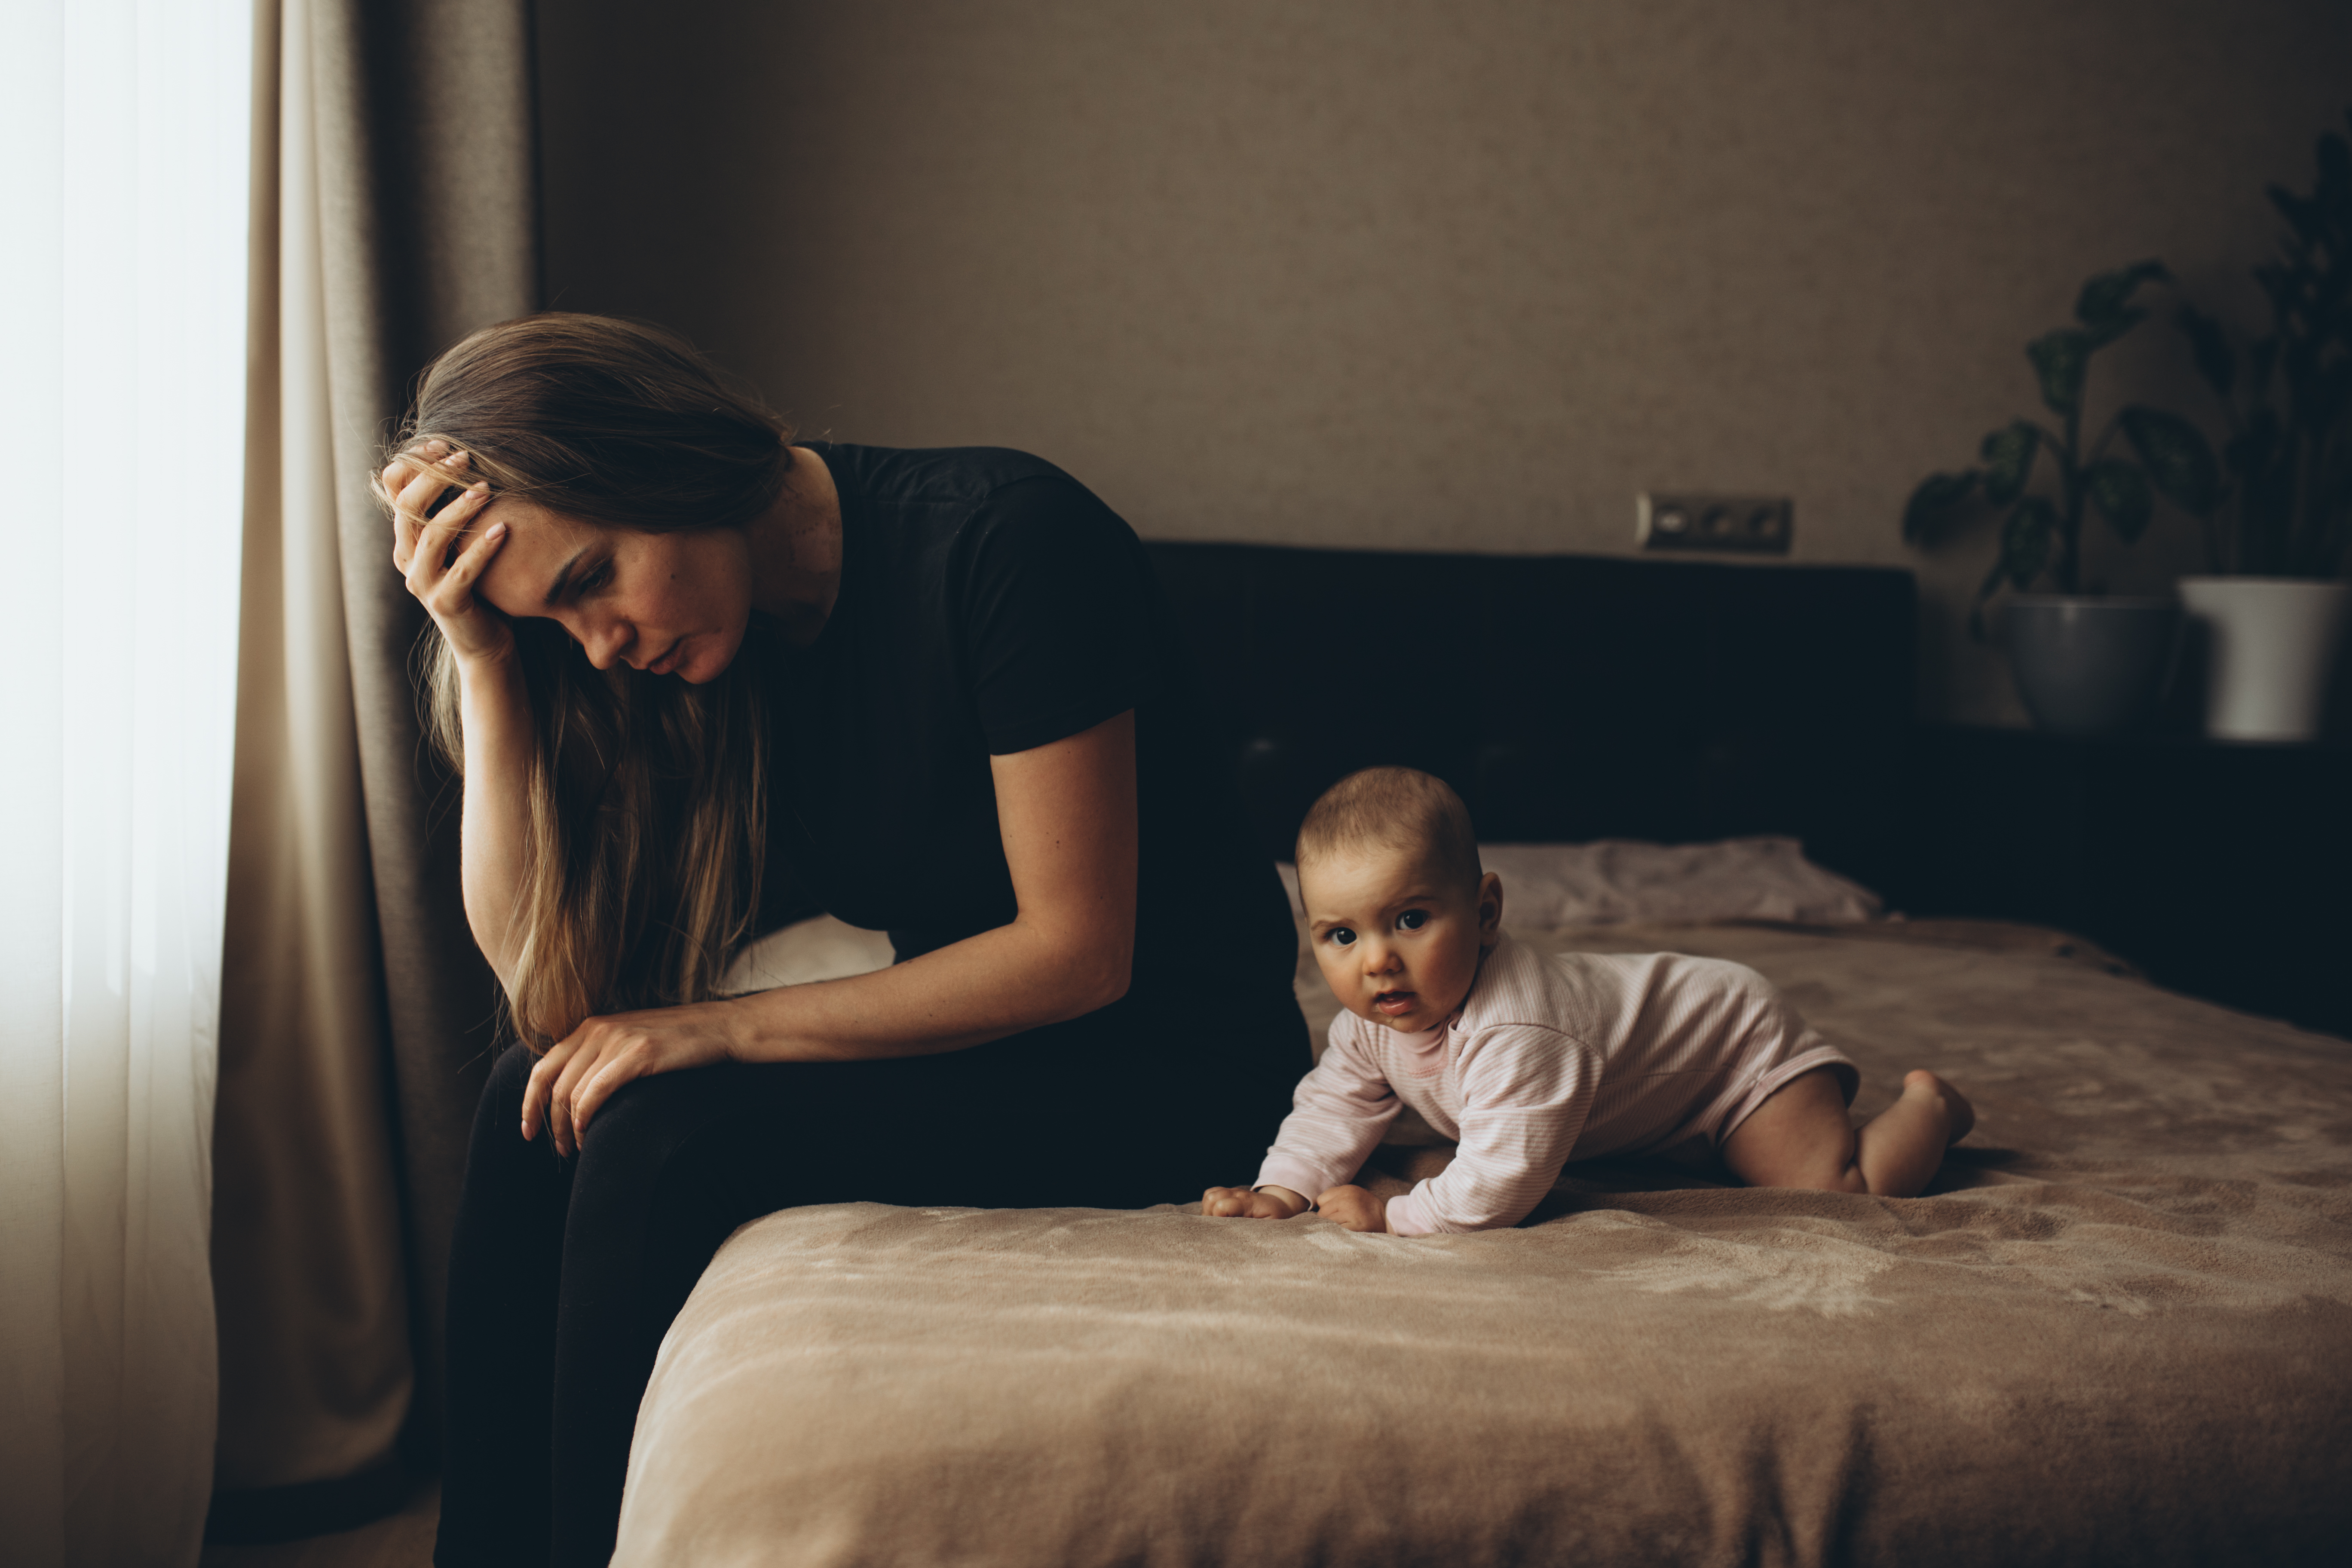 Une femme en détresse photographiée à côté d'un bébé sur le lit | Source : Getty Images